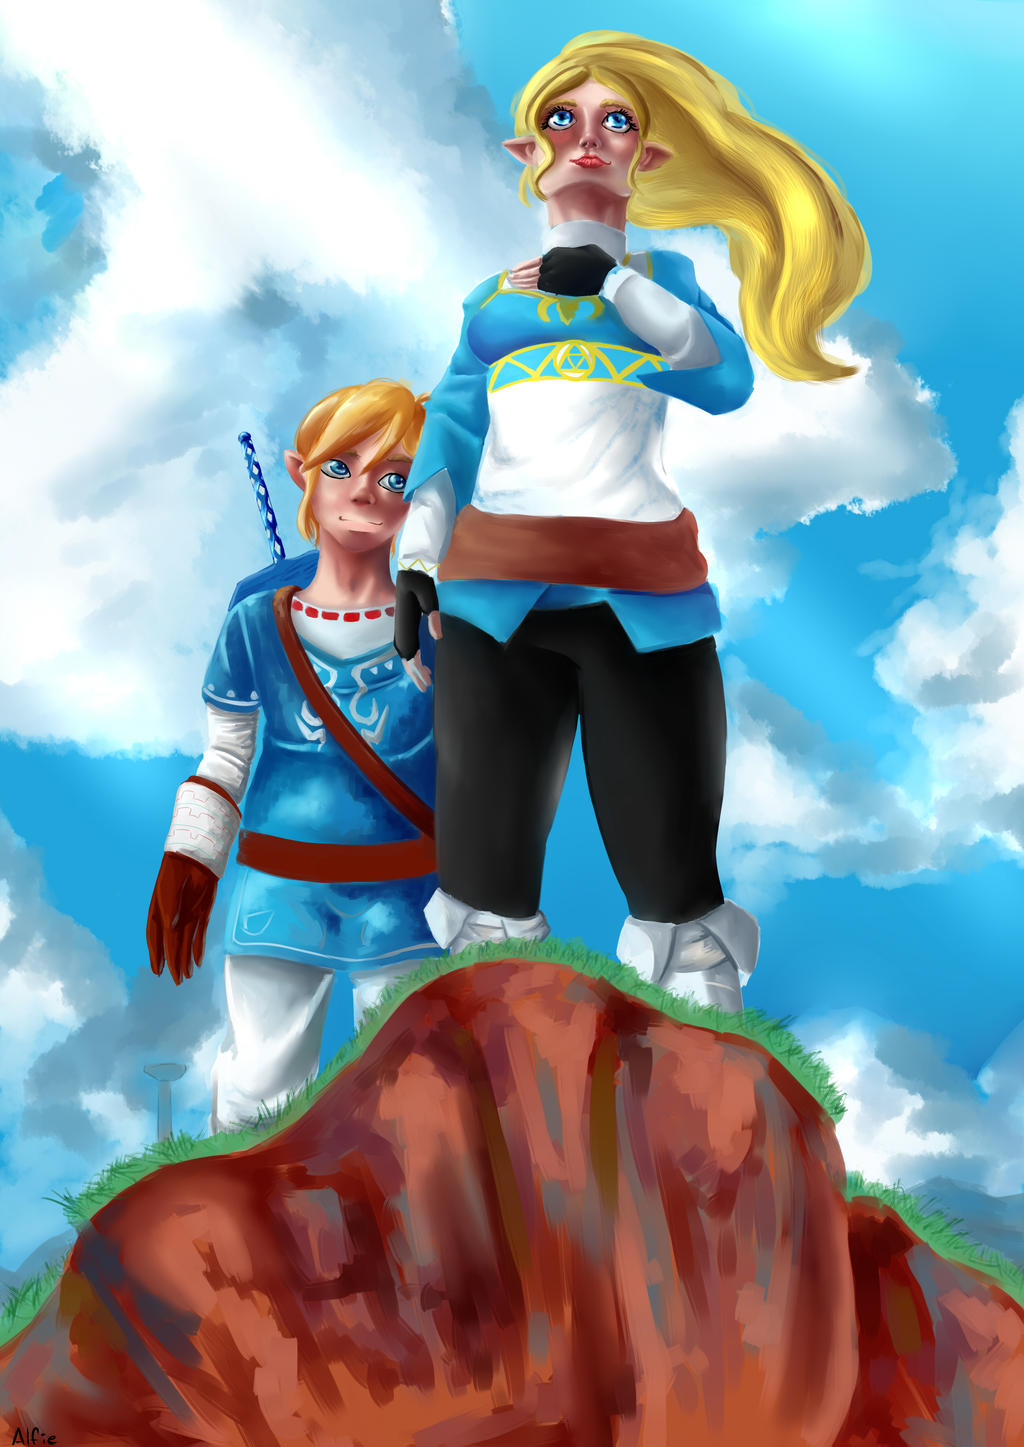 Zelda and link